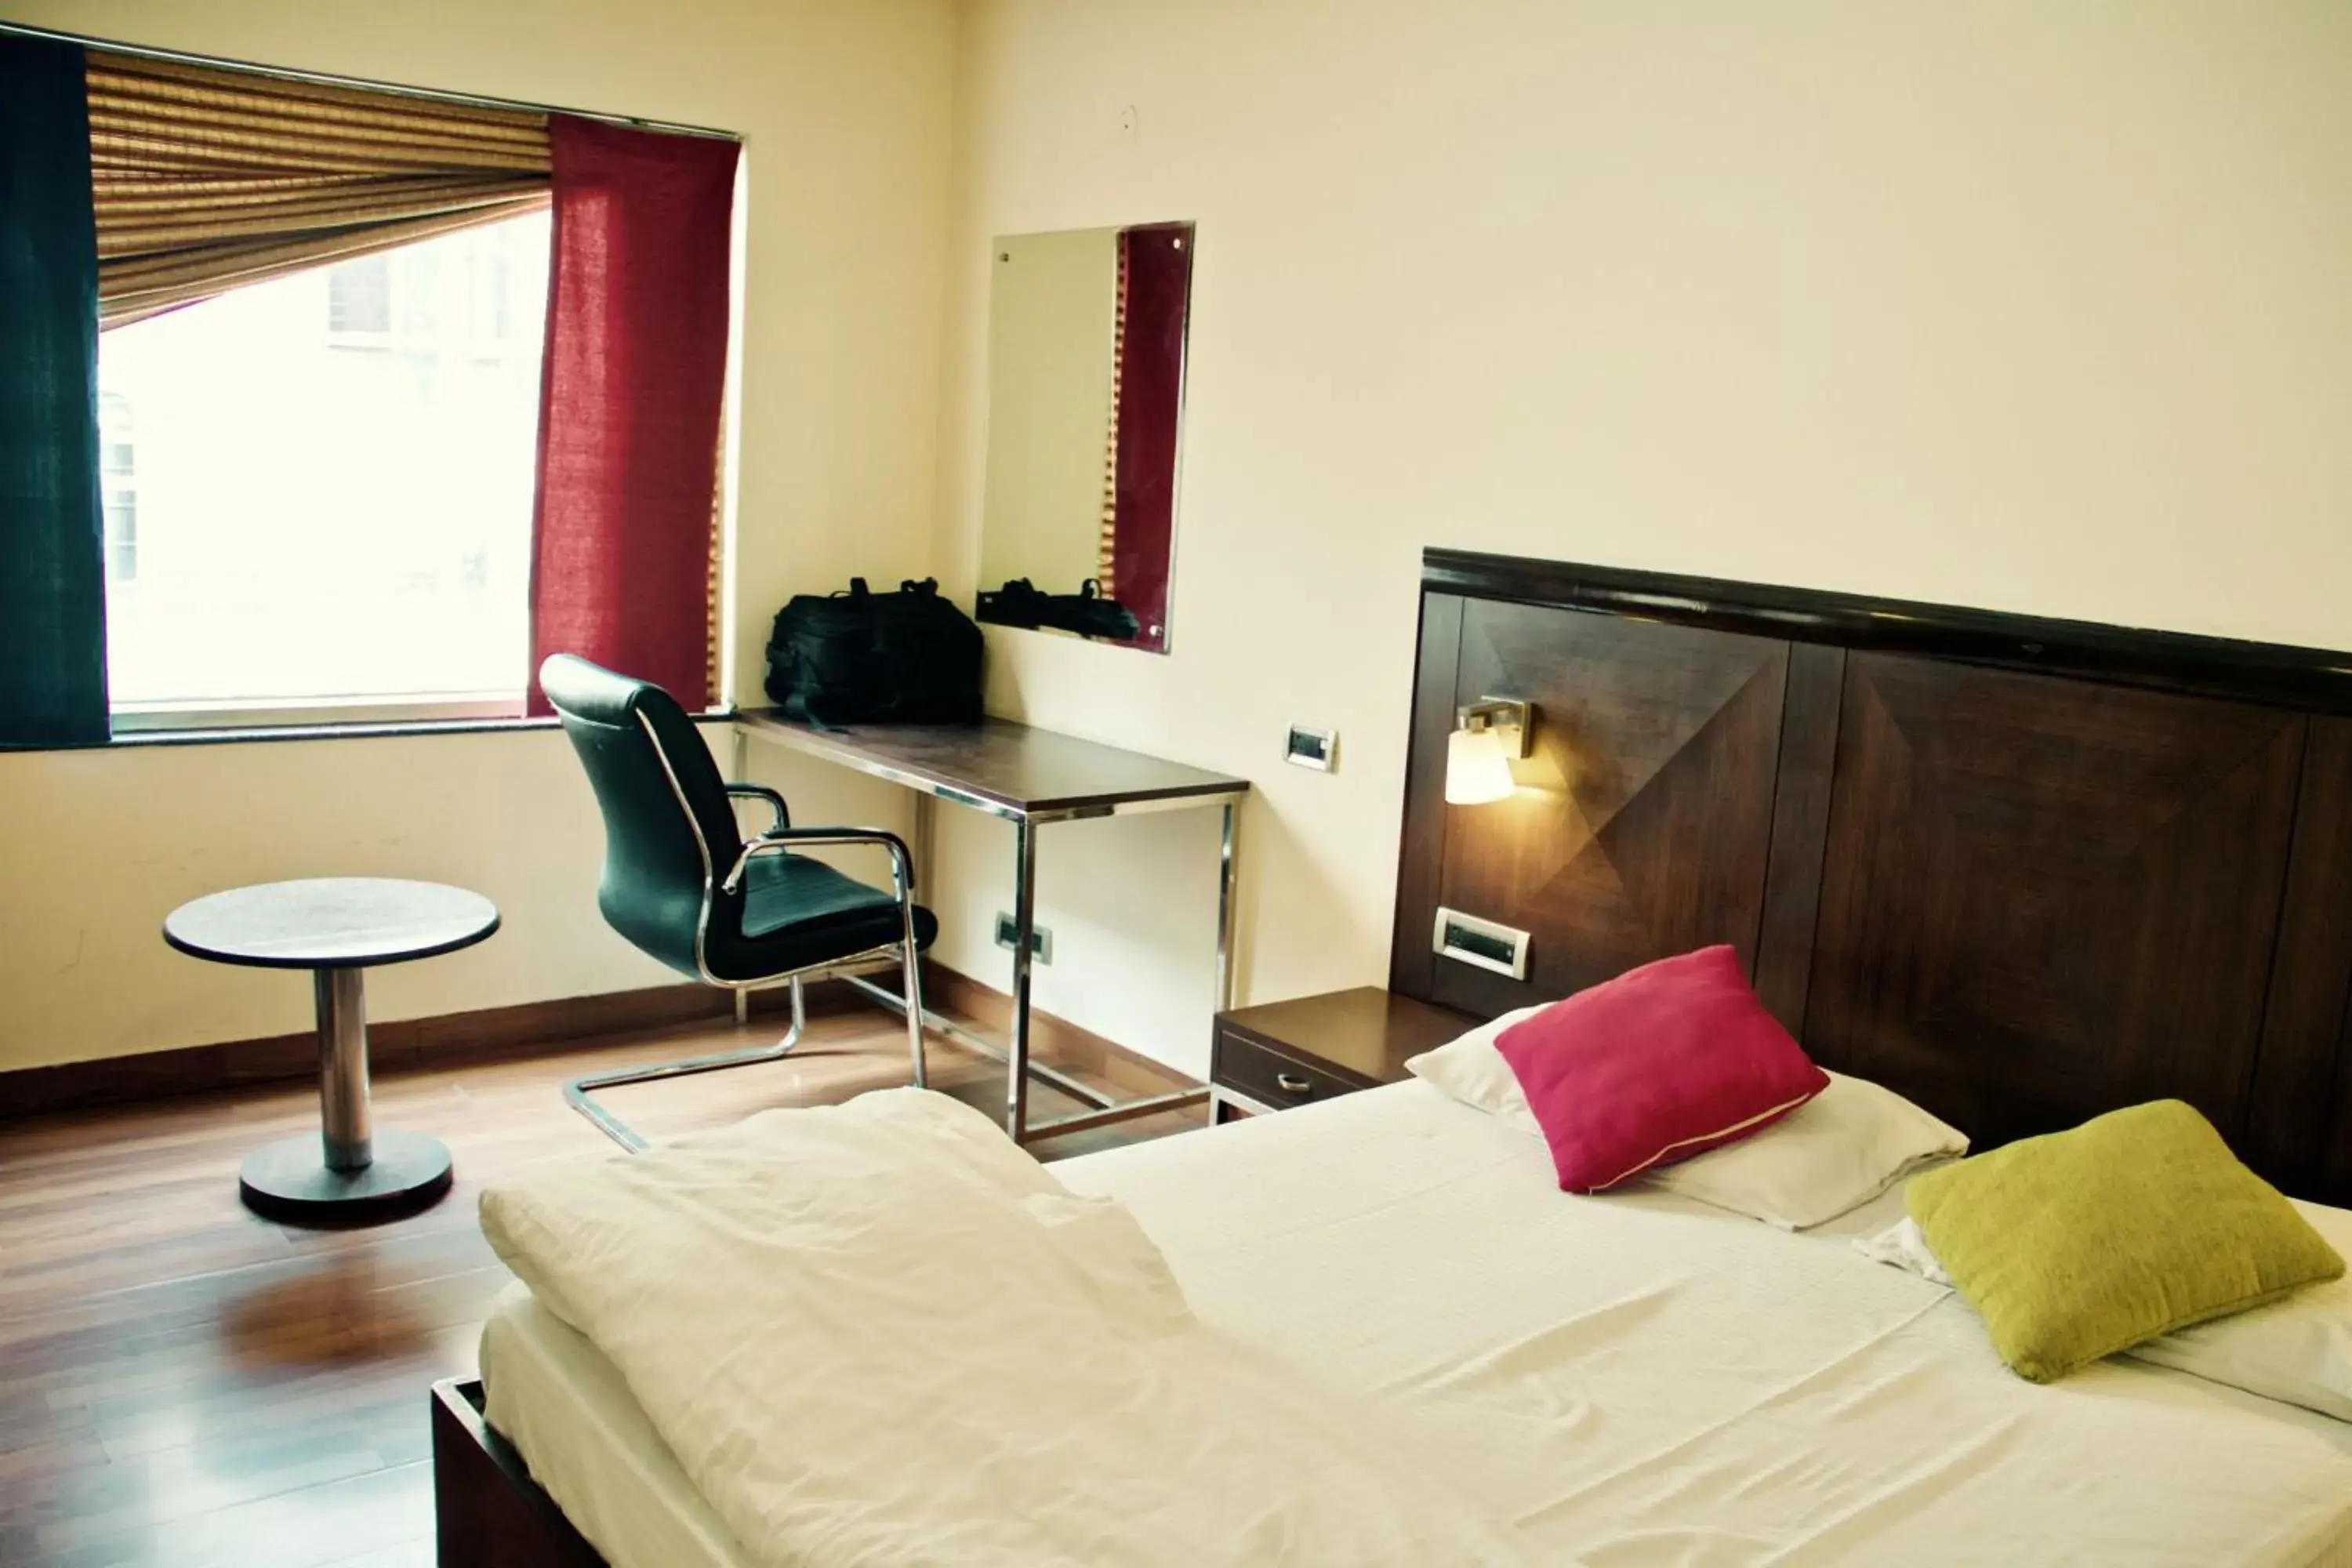 Bed in goSTOPS Delhi - Rooms & Dorms